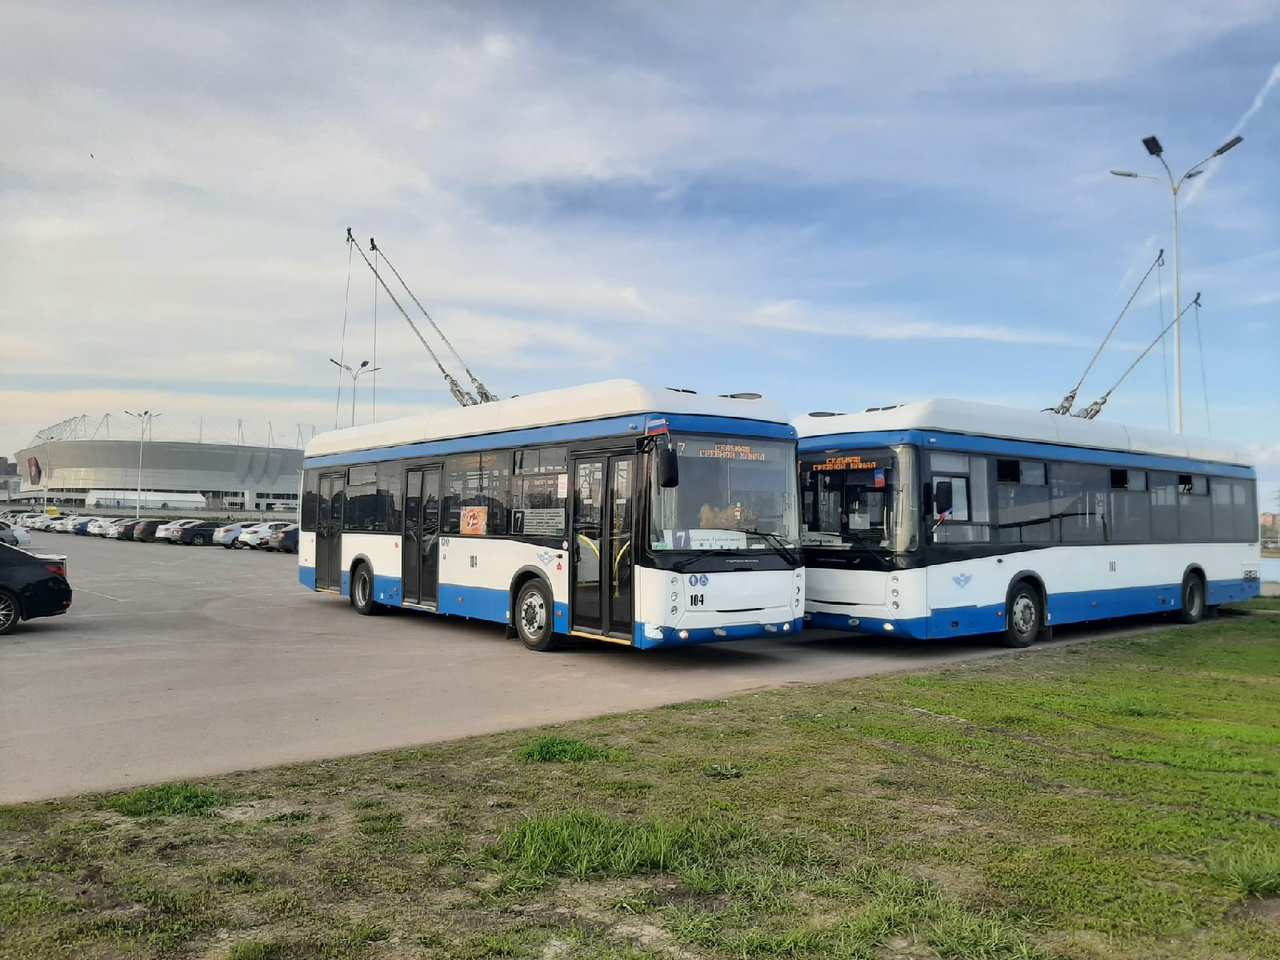 40 троллейбусов, 35 электробусов и 110 автобусов закупят для Ростова-на-Дону - фото 1